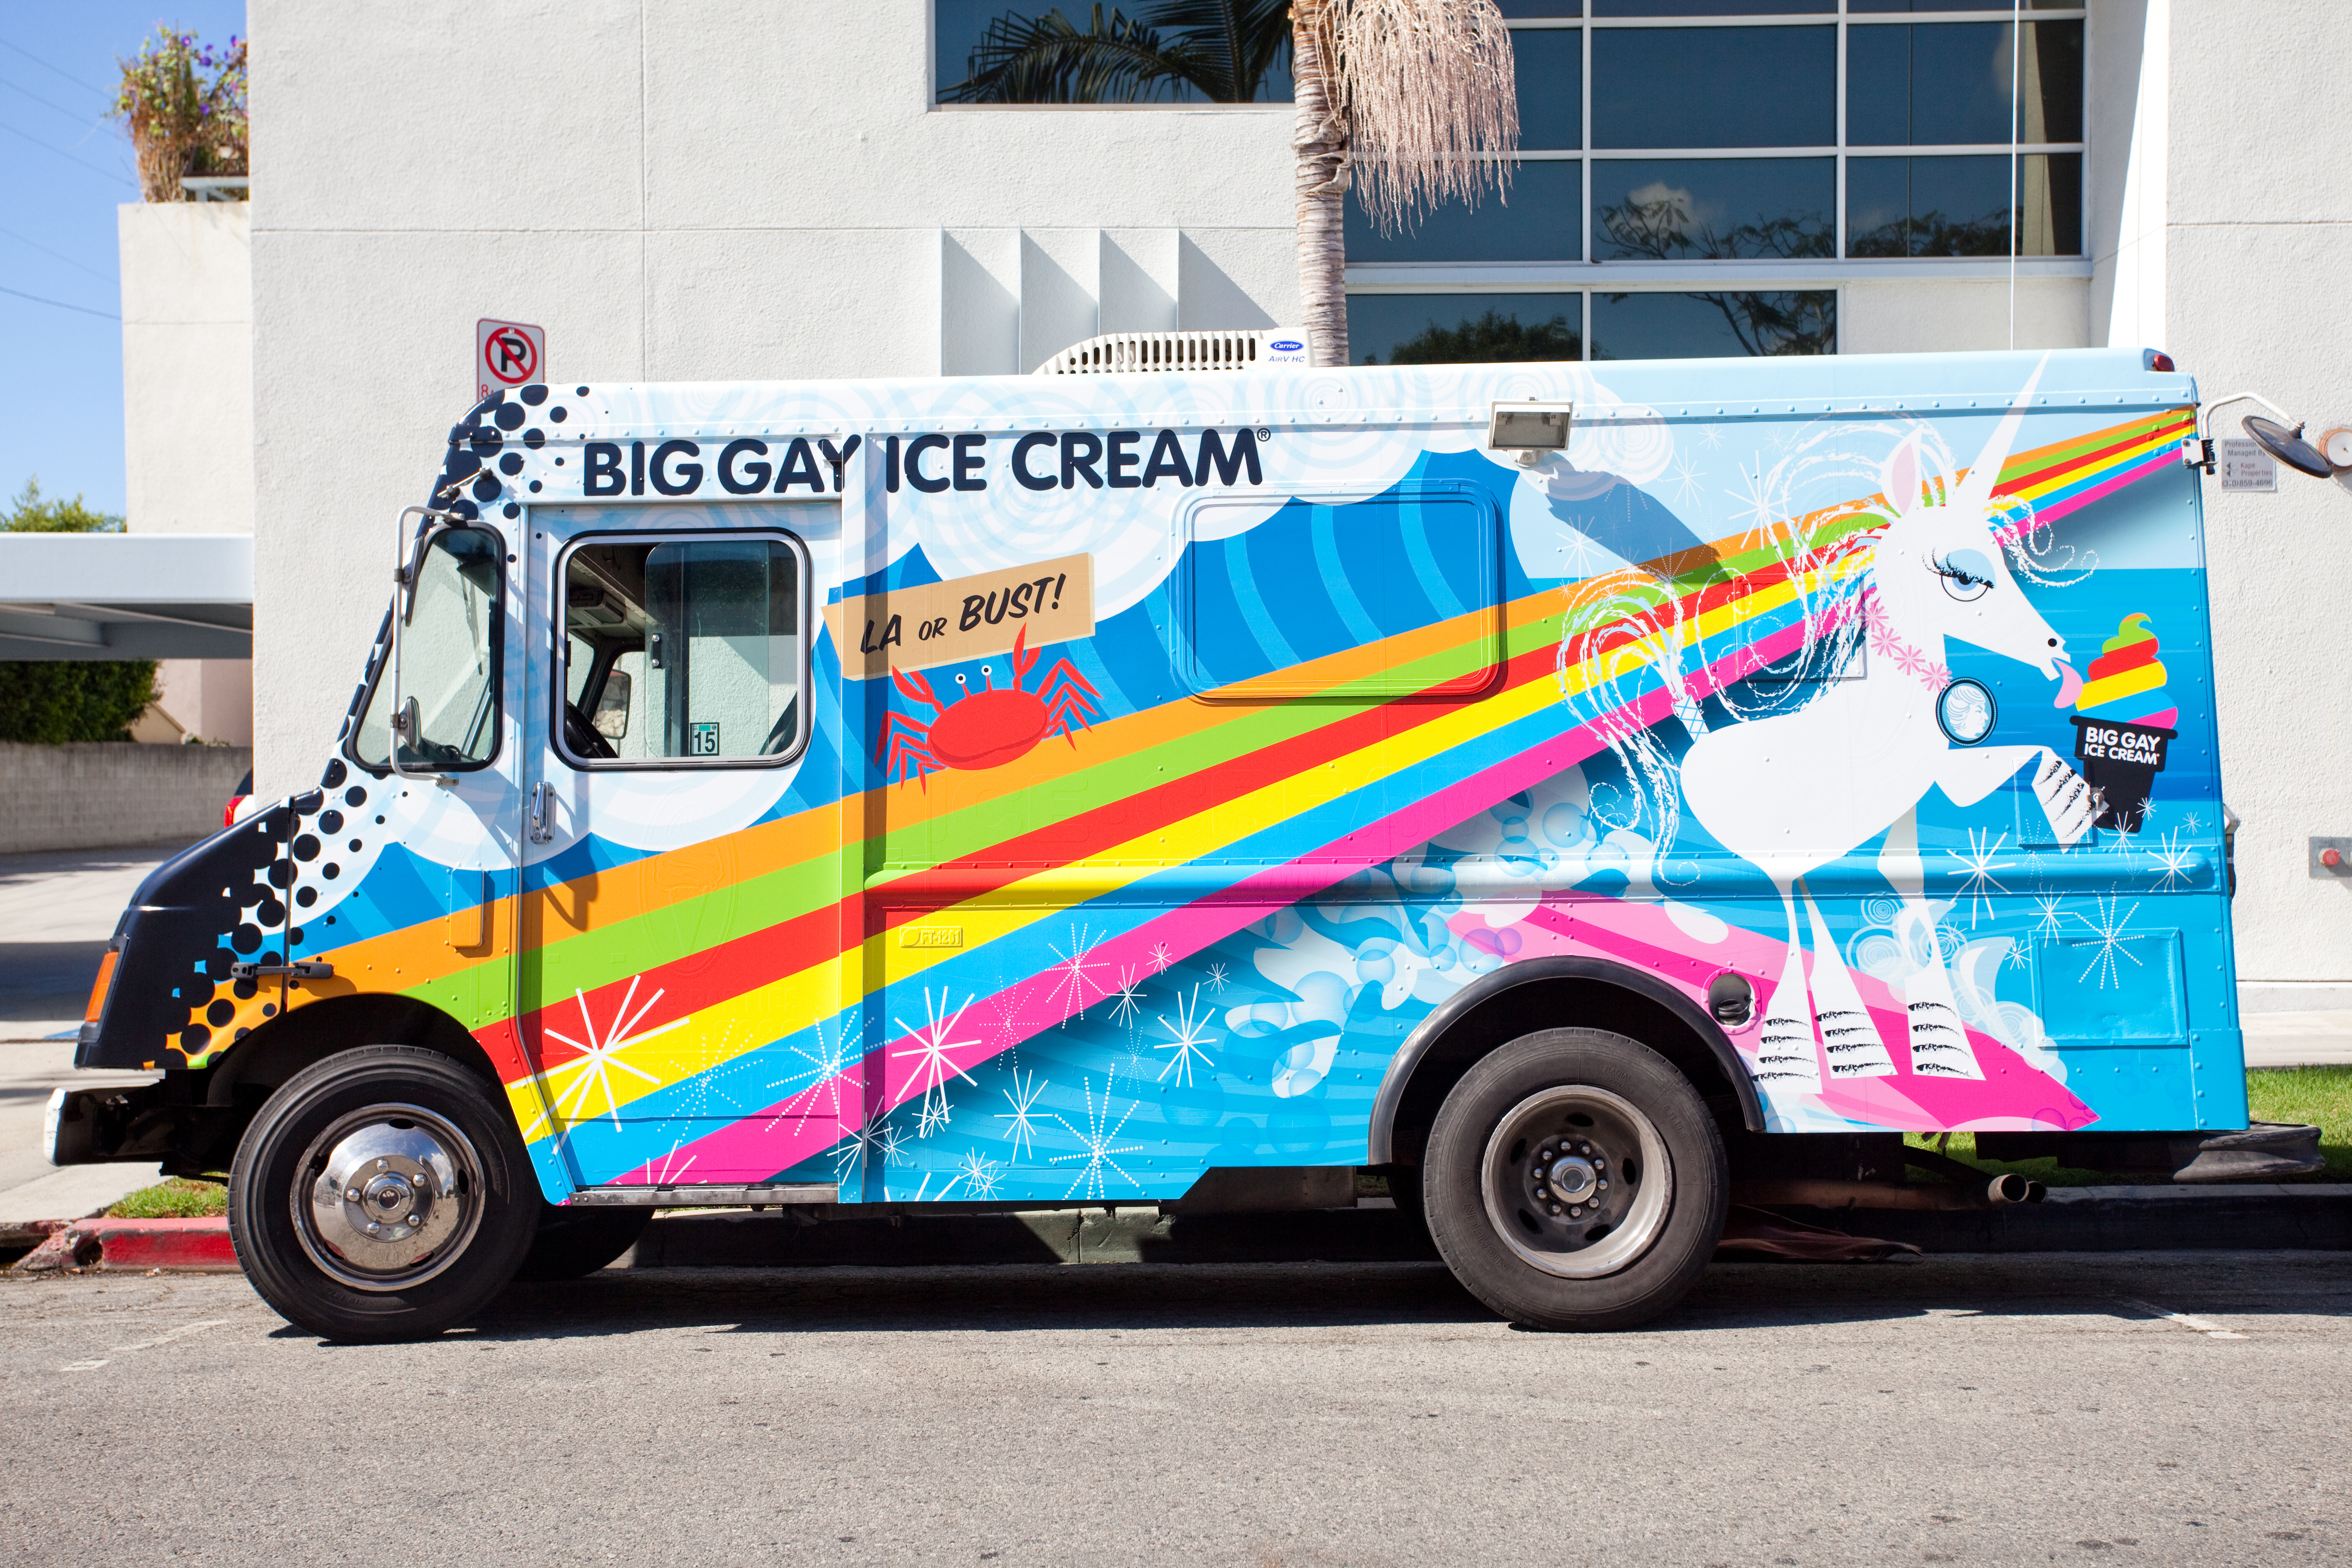 Big Gay Ice Cream truck in Los Angeles